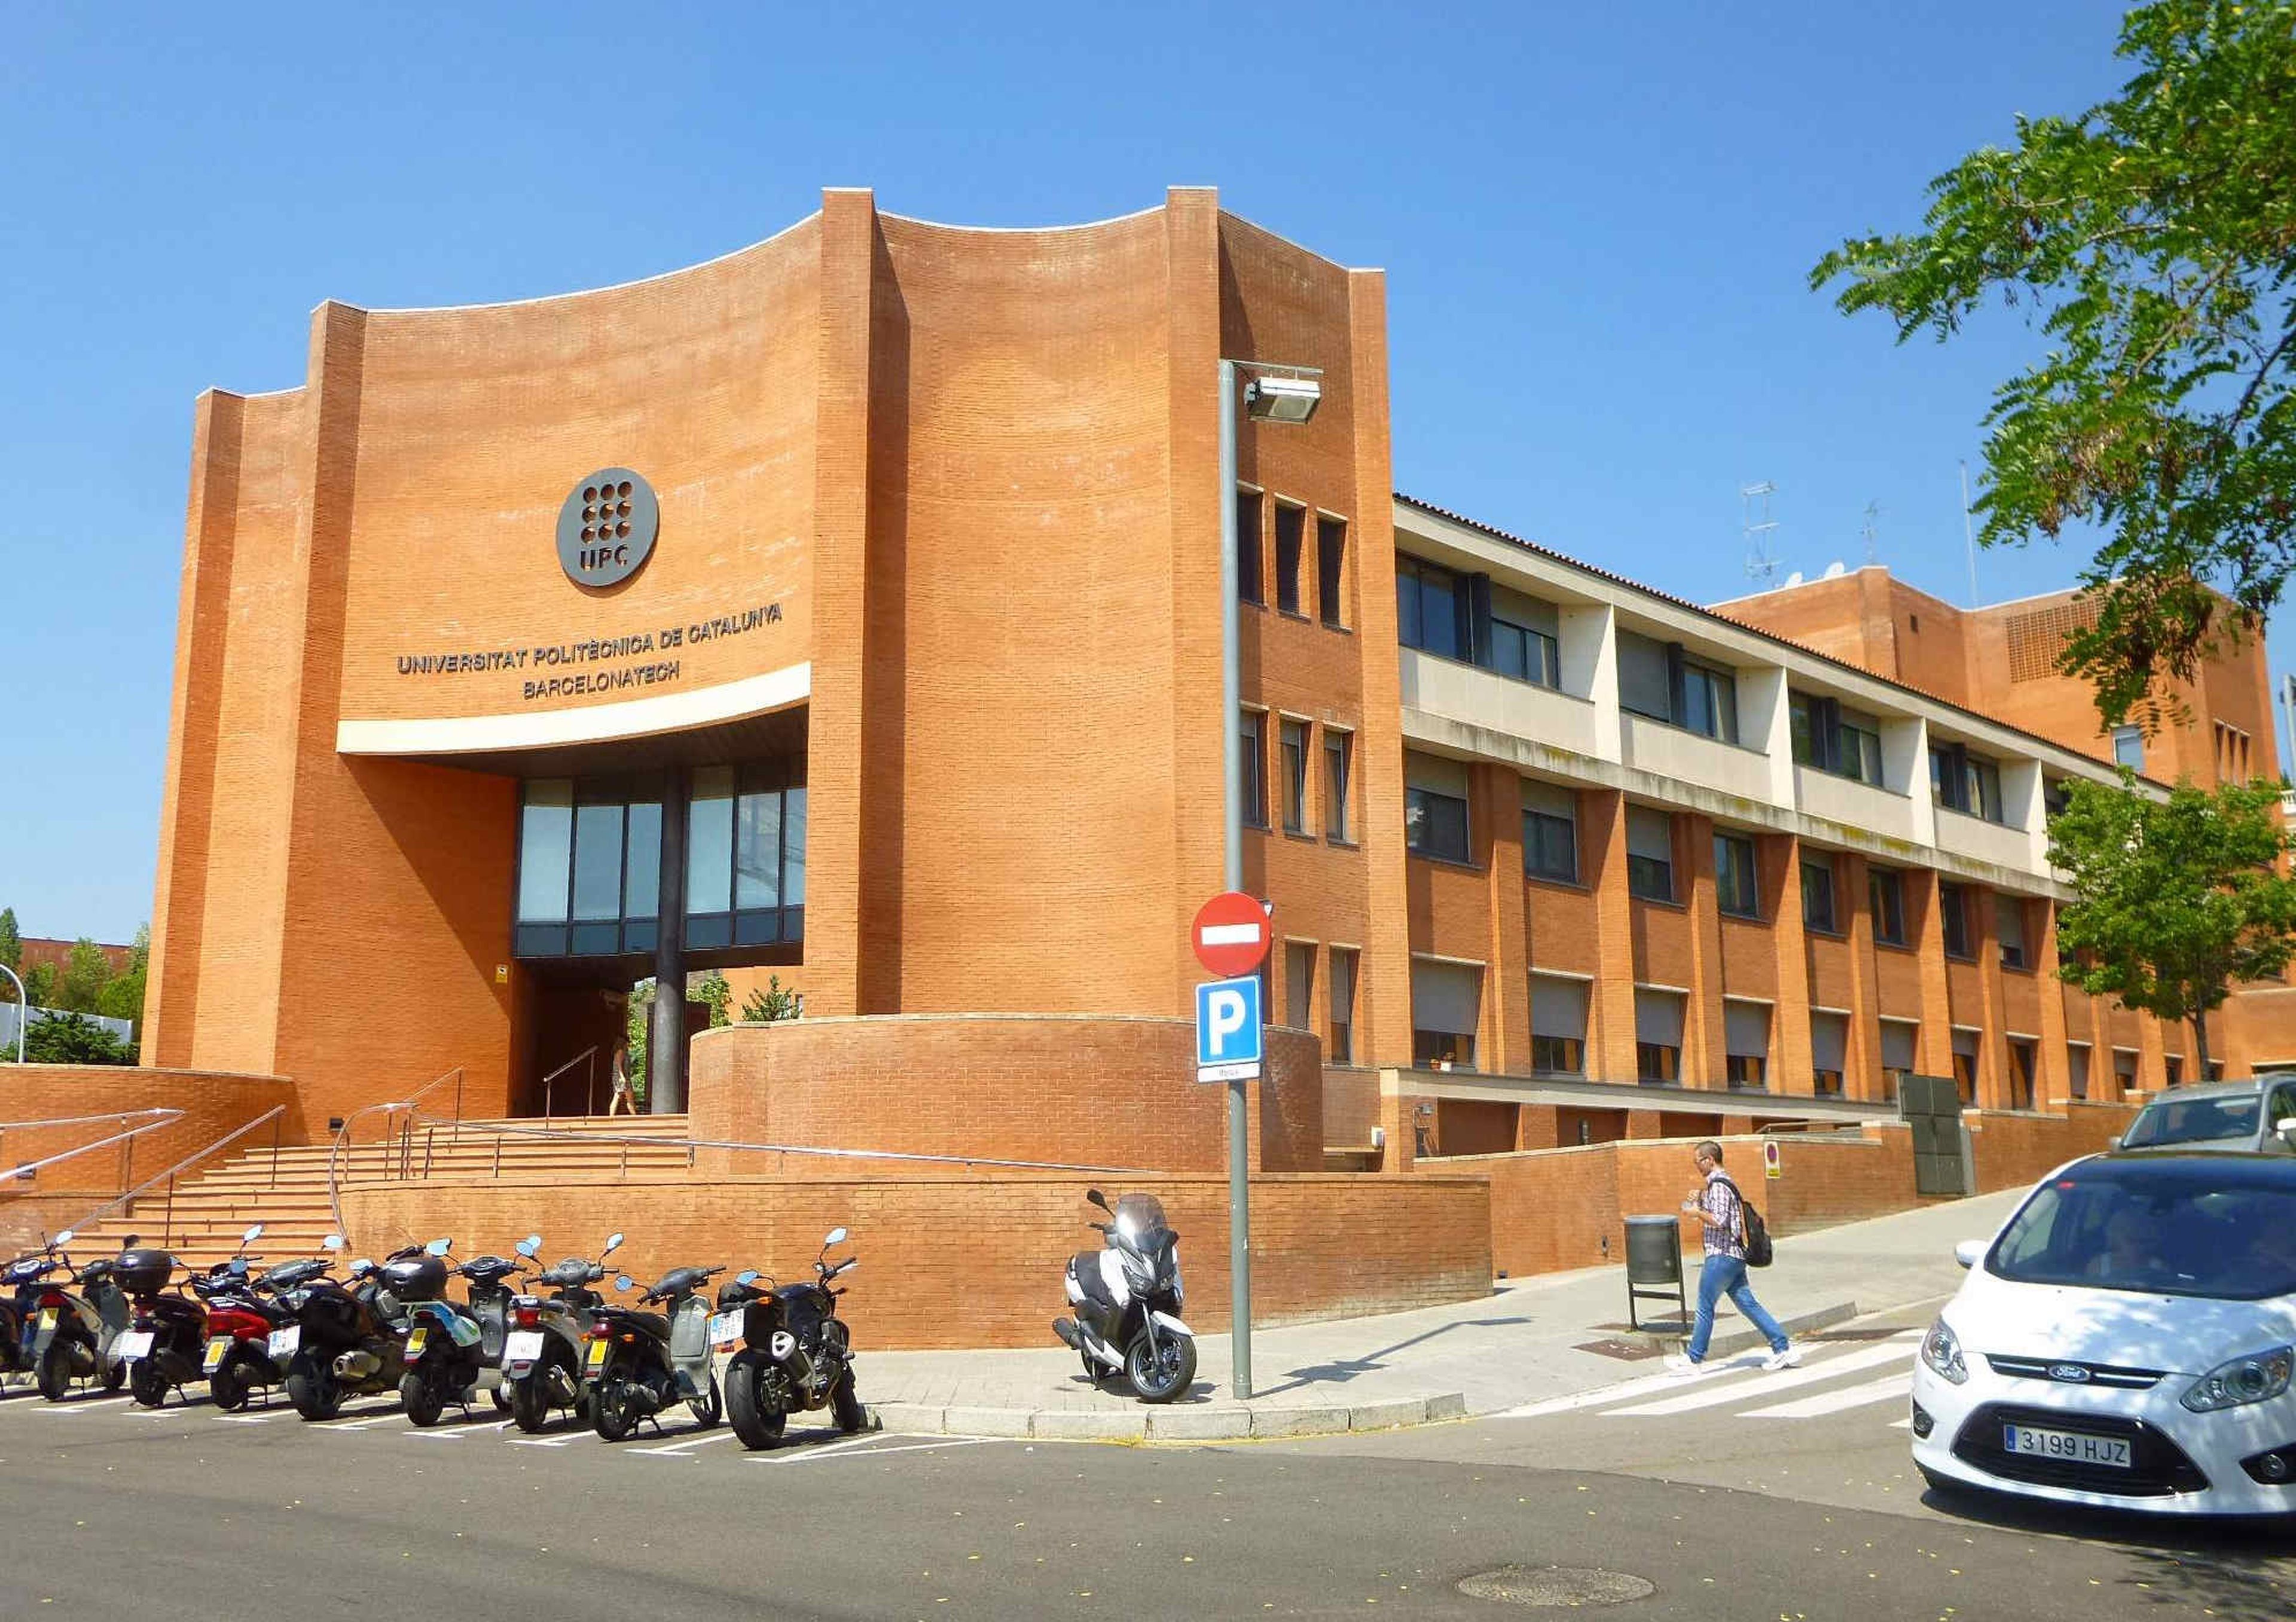 Edificio de la Universidad Politécnica de Cataluña BarcelonaTech.